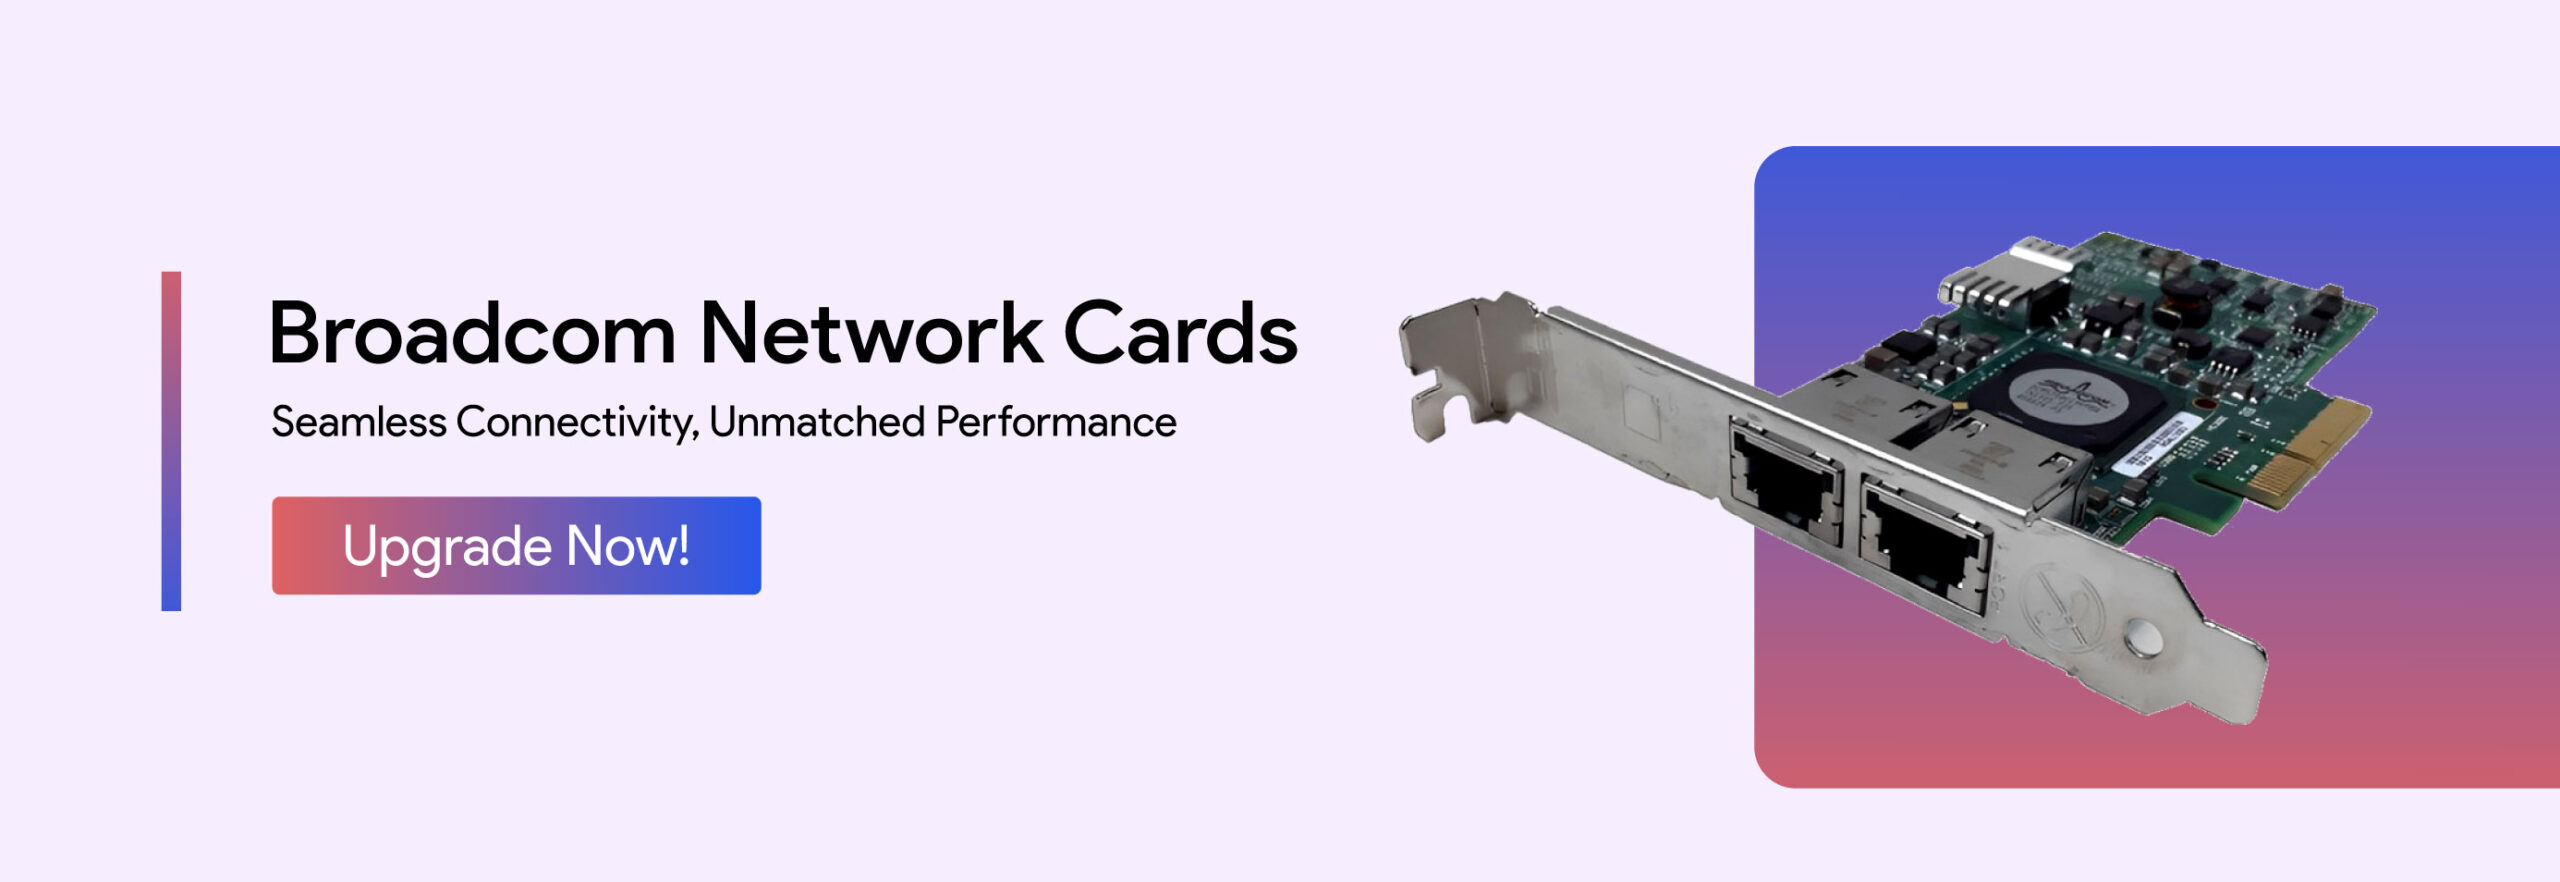 Broadcom-Network-Cards